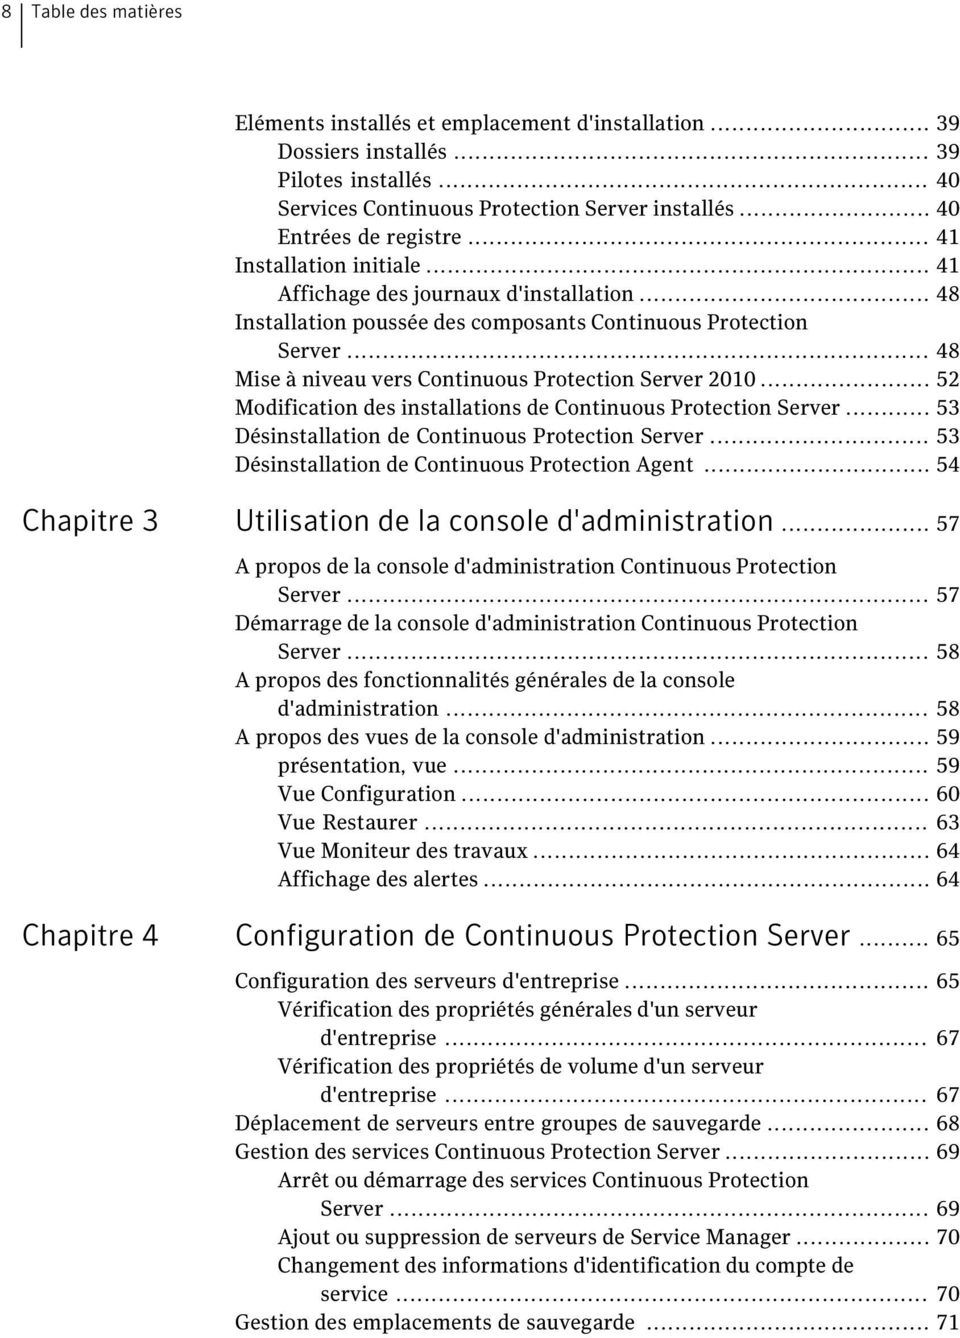 .. 52 Modification des installations de Continuous Protection Server... 53 Désinstallation de Continuous Protection Server... 53 Désinstallation de Continuous Protection Agent.